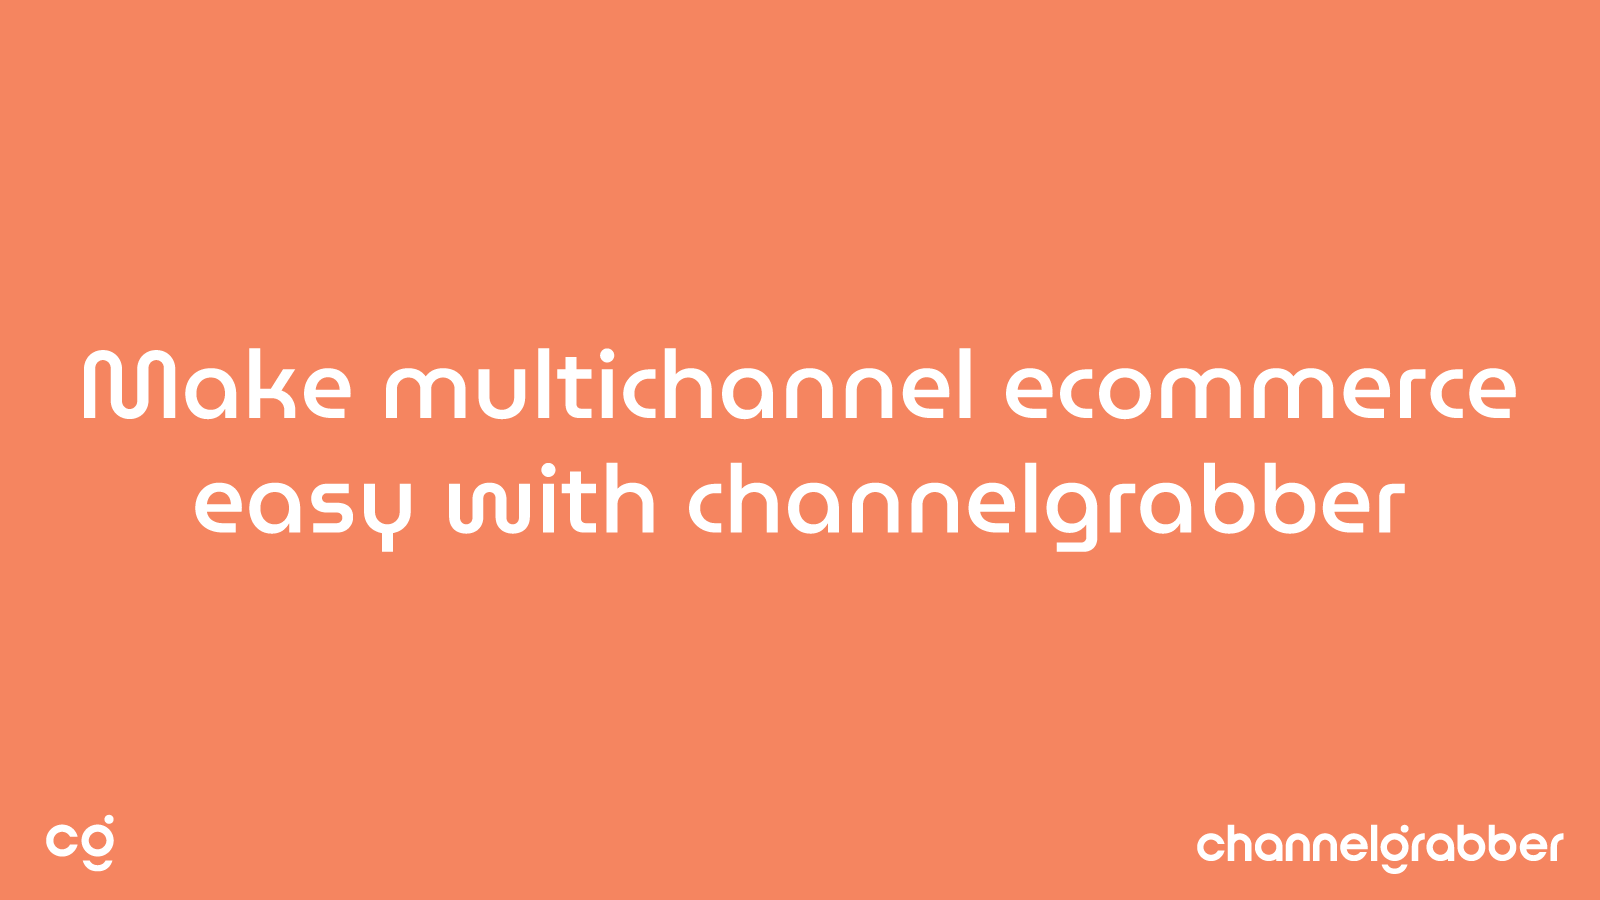 ChannelGrabber: E-Commerce leicht gemacht